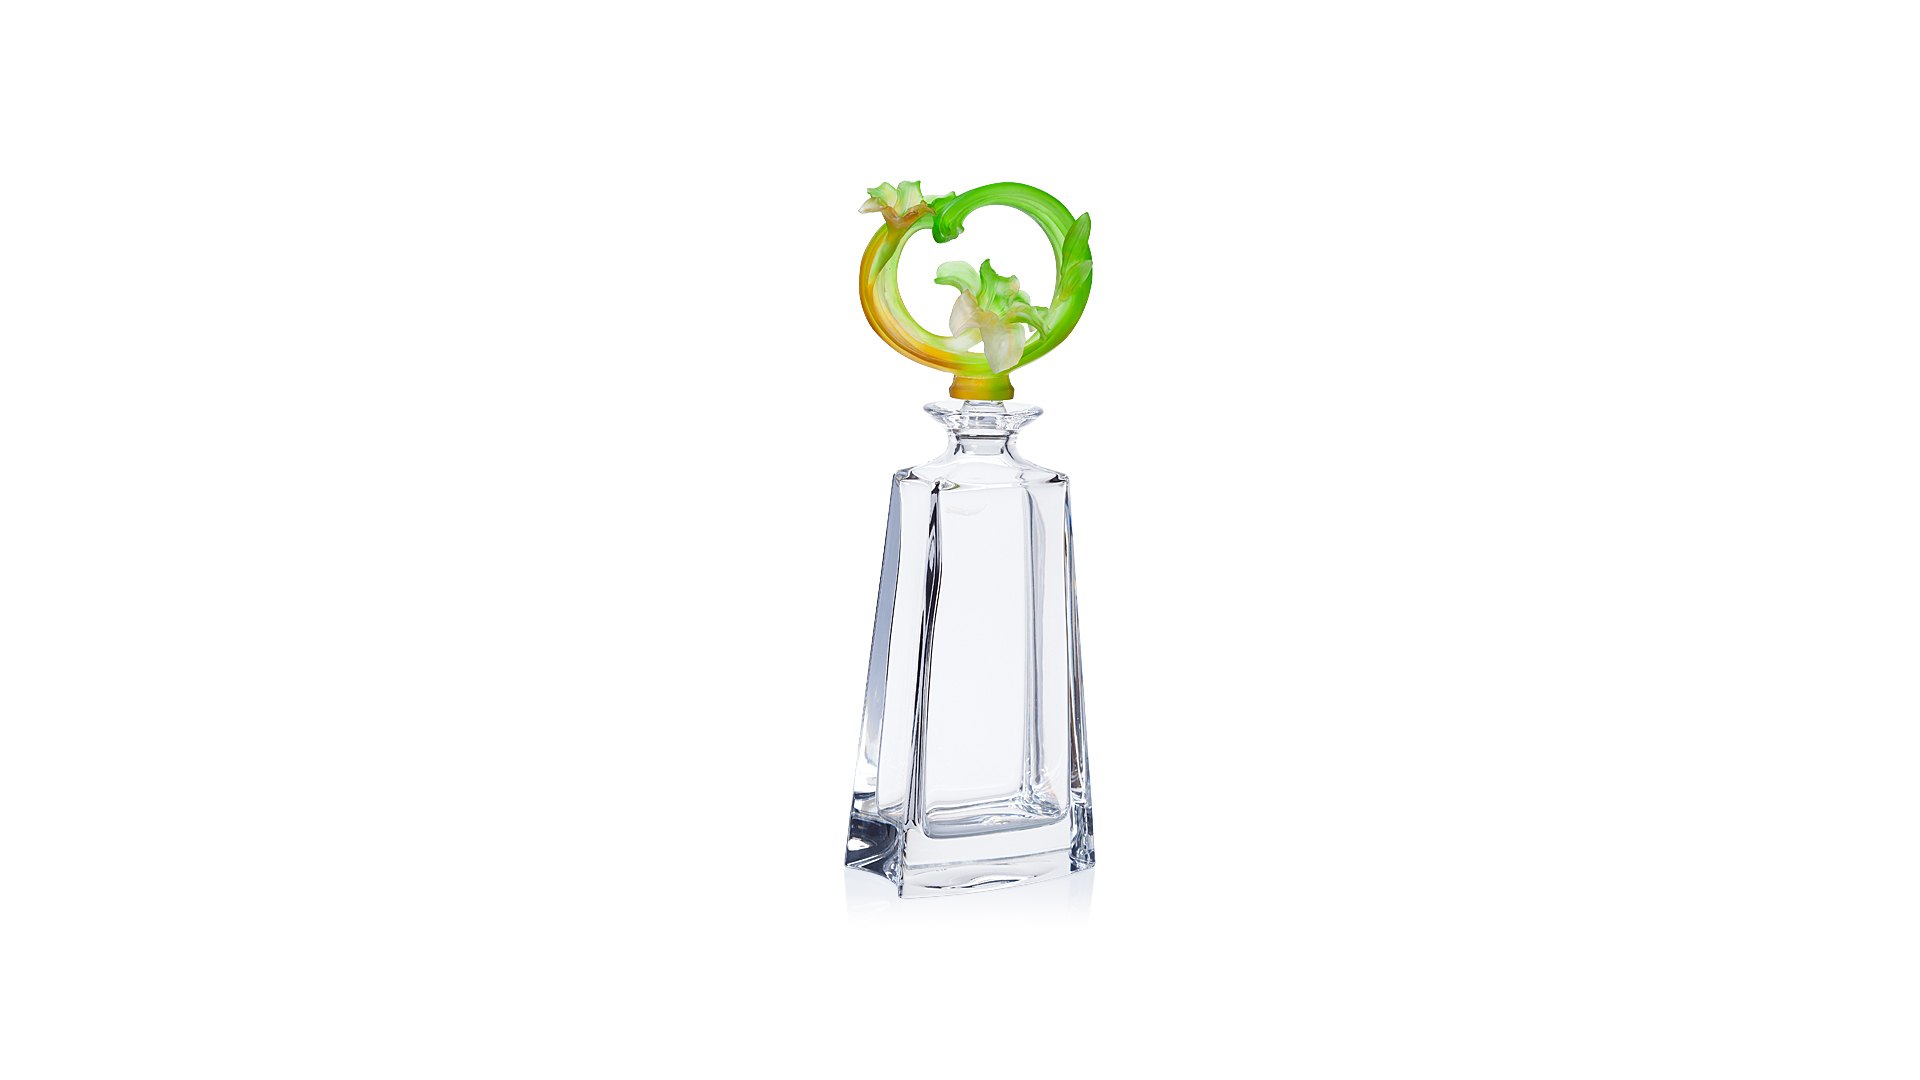 Графин для виски Cristal de ParisКруг с цветами1л, янтарно-зеленый